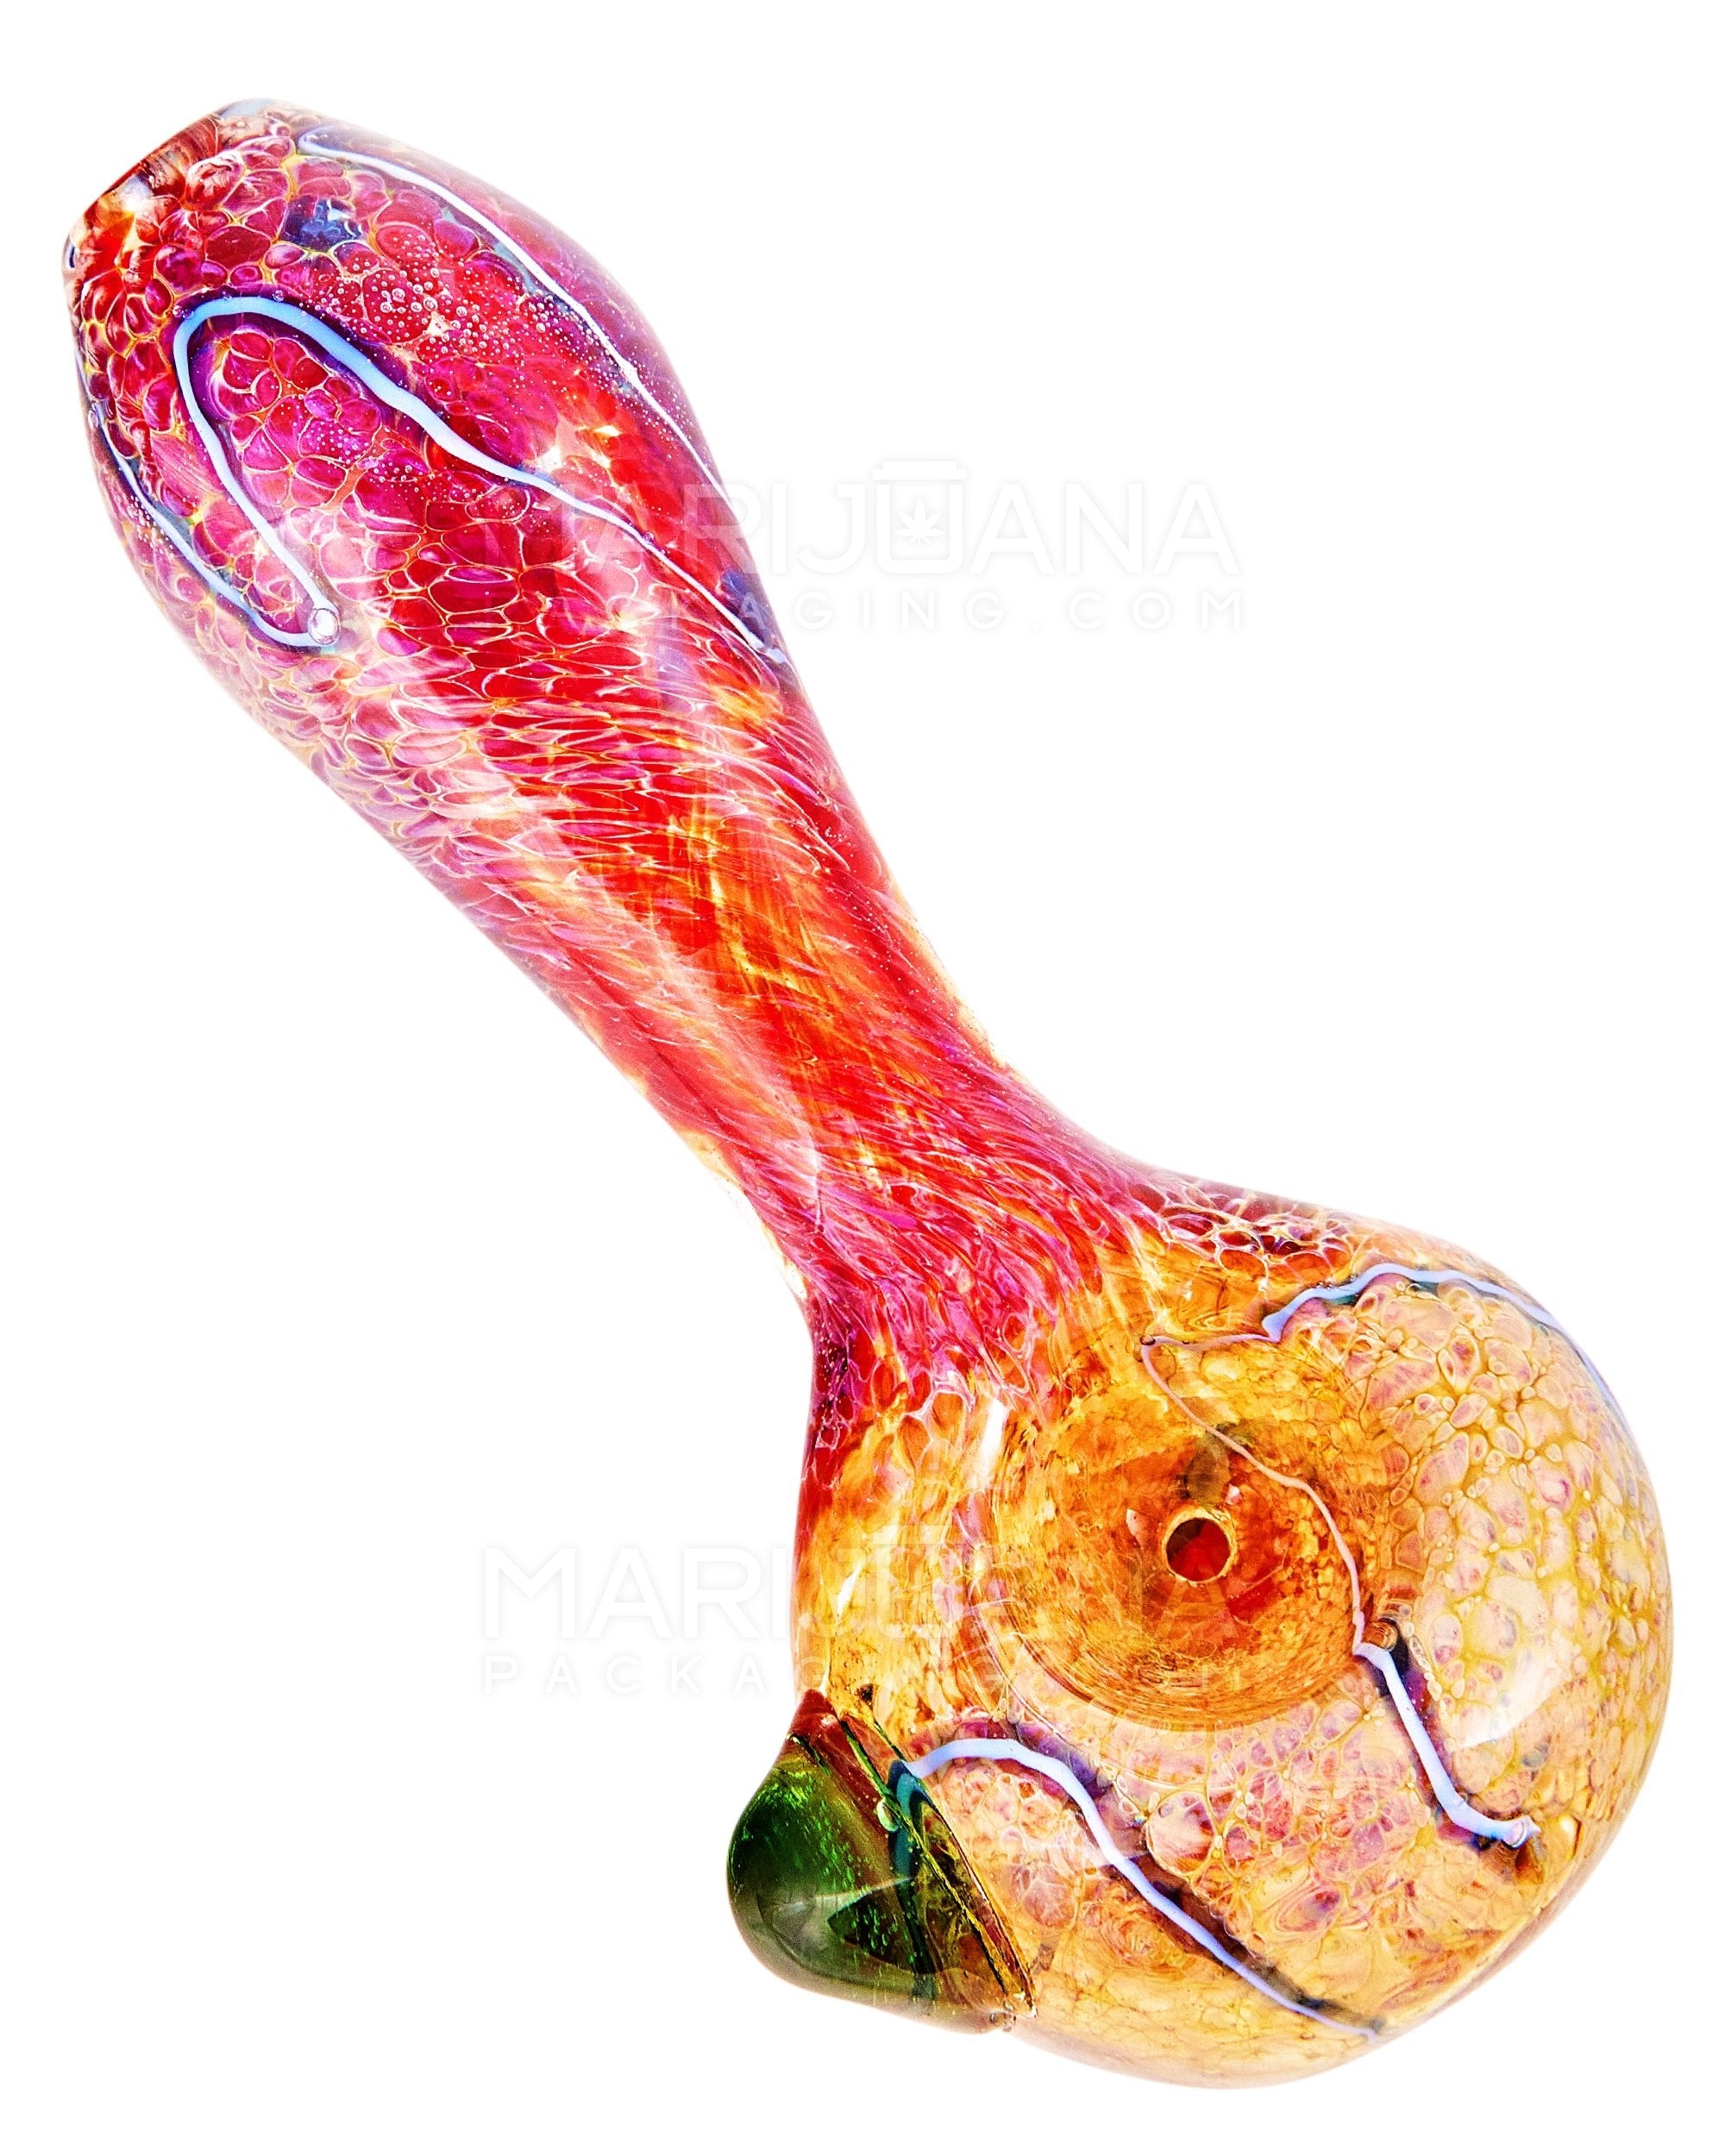 Frit & Swirl Spoon Hand Pipe w/ Knocker | 4in Long - Glass - Assorted - 6